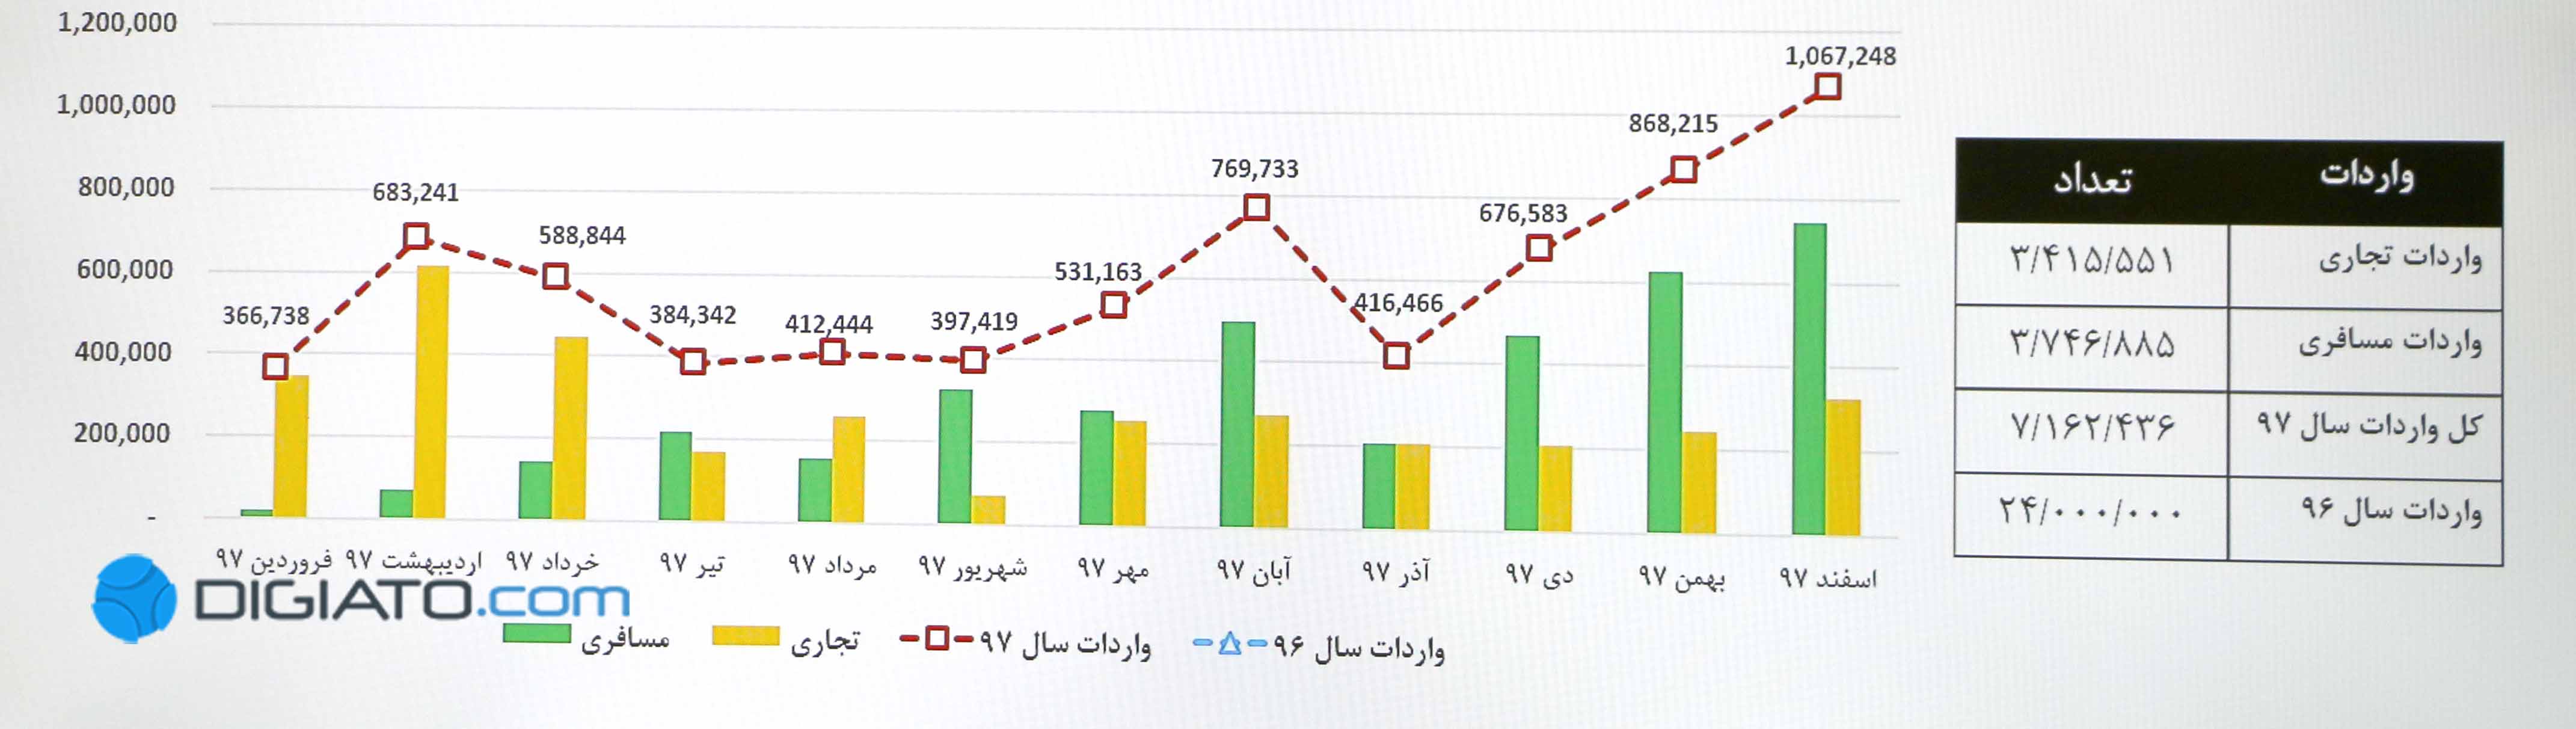 تعمیرات تلویزیون توشیبا در شهر تویسرکان استان همدان